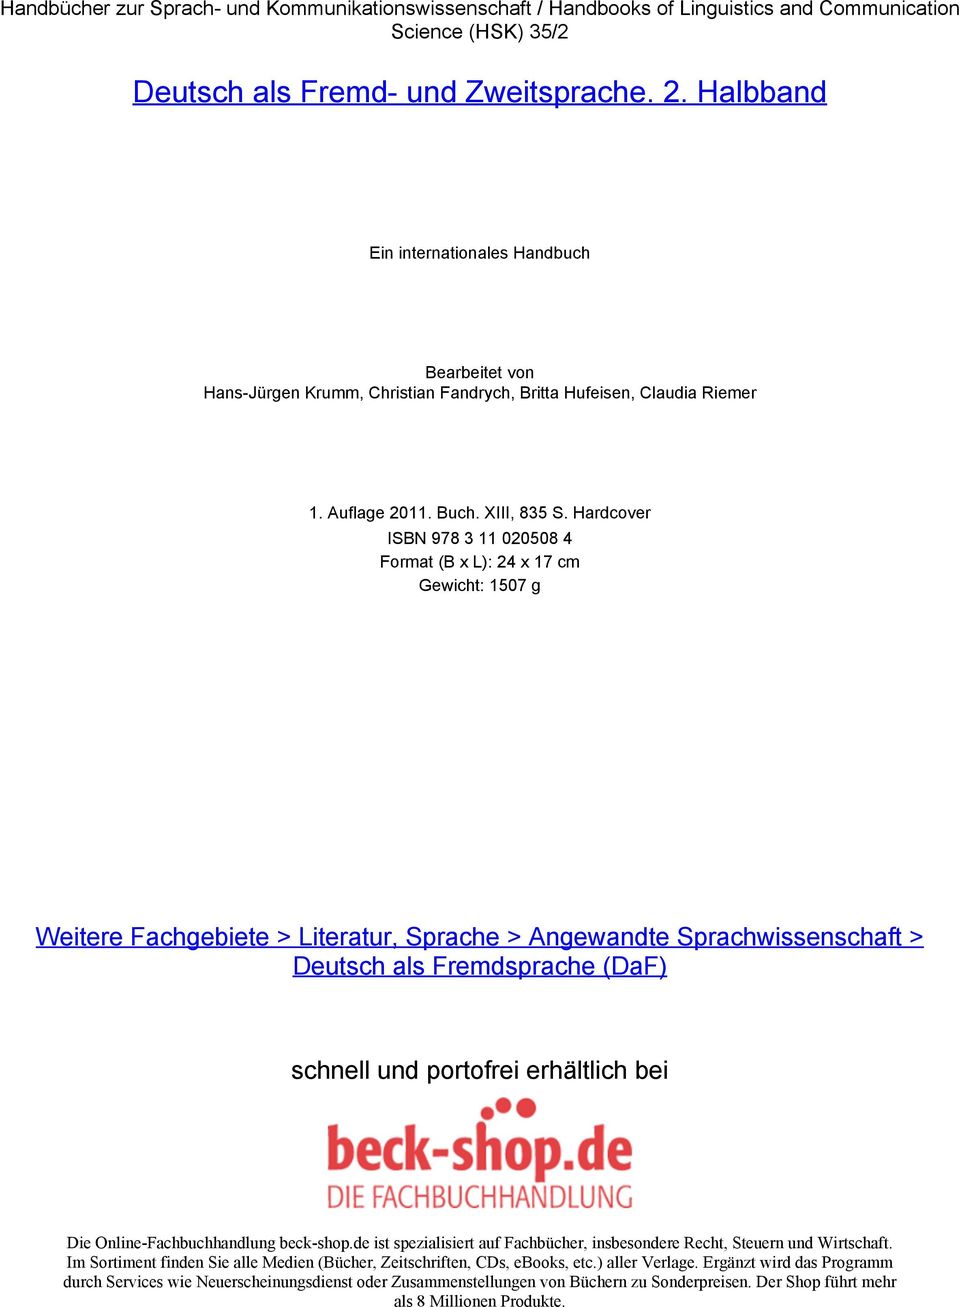 Hardcover ISBN 978 3 11 020508 4 Format (B x L): 24 x 17 cm Gewicht: 1507 g Weitere Fachgebiete > Literatur, Sprache > Angewandte Sprachwissenschaft > Deutsch als Fremdsprache (DaF) schnell und